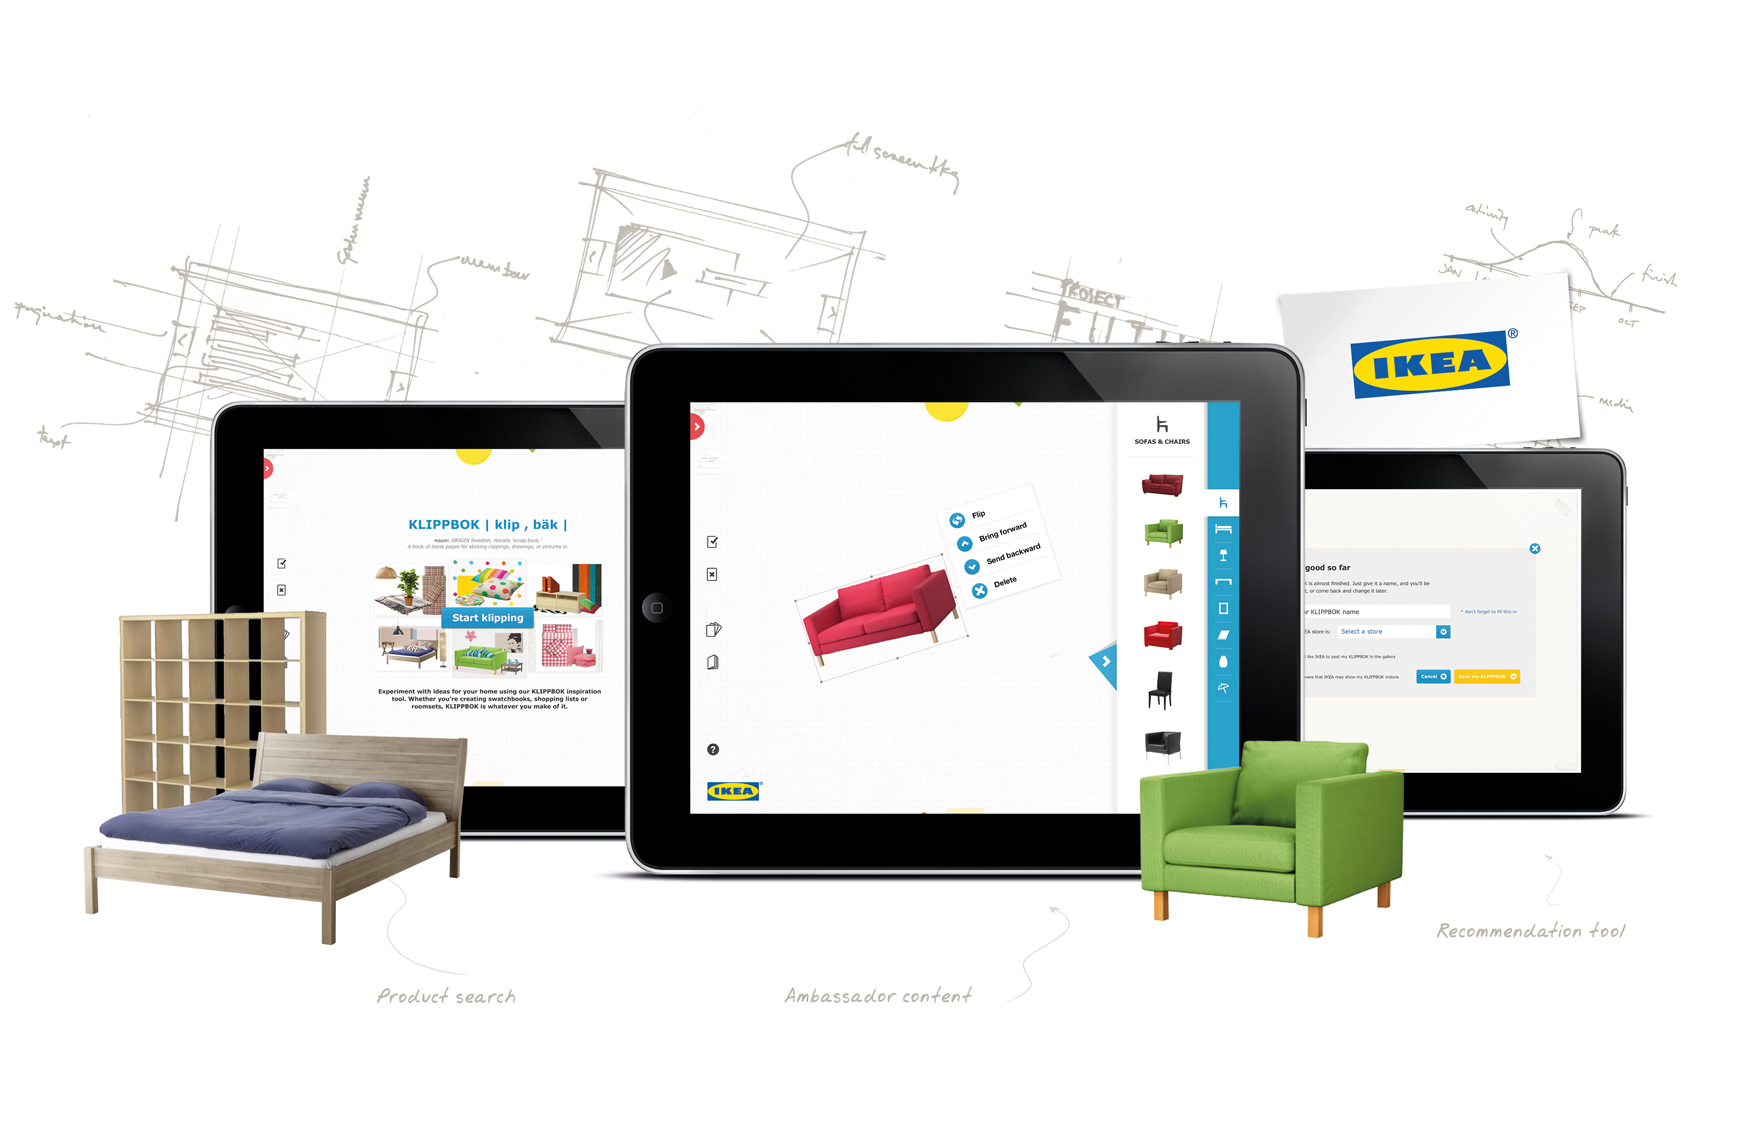 Ikea-Hero-20130201-v01